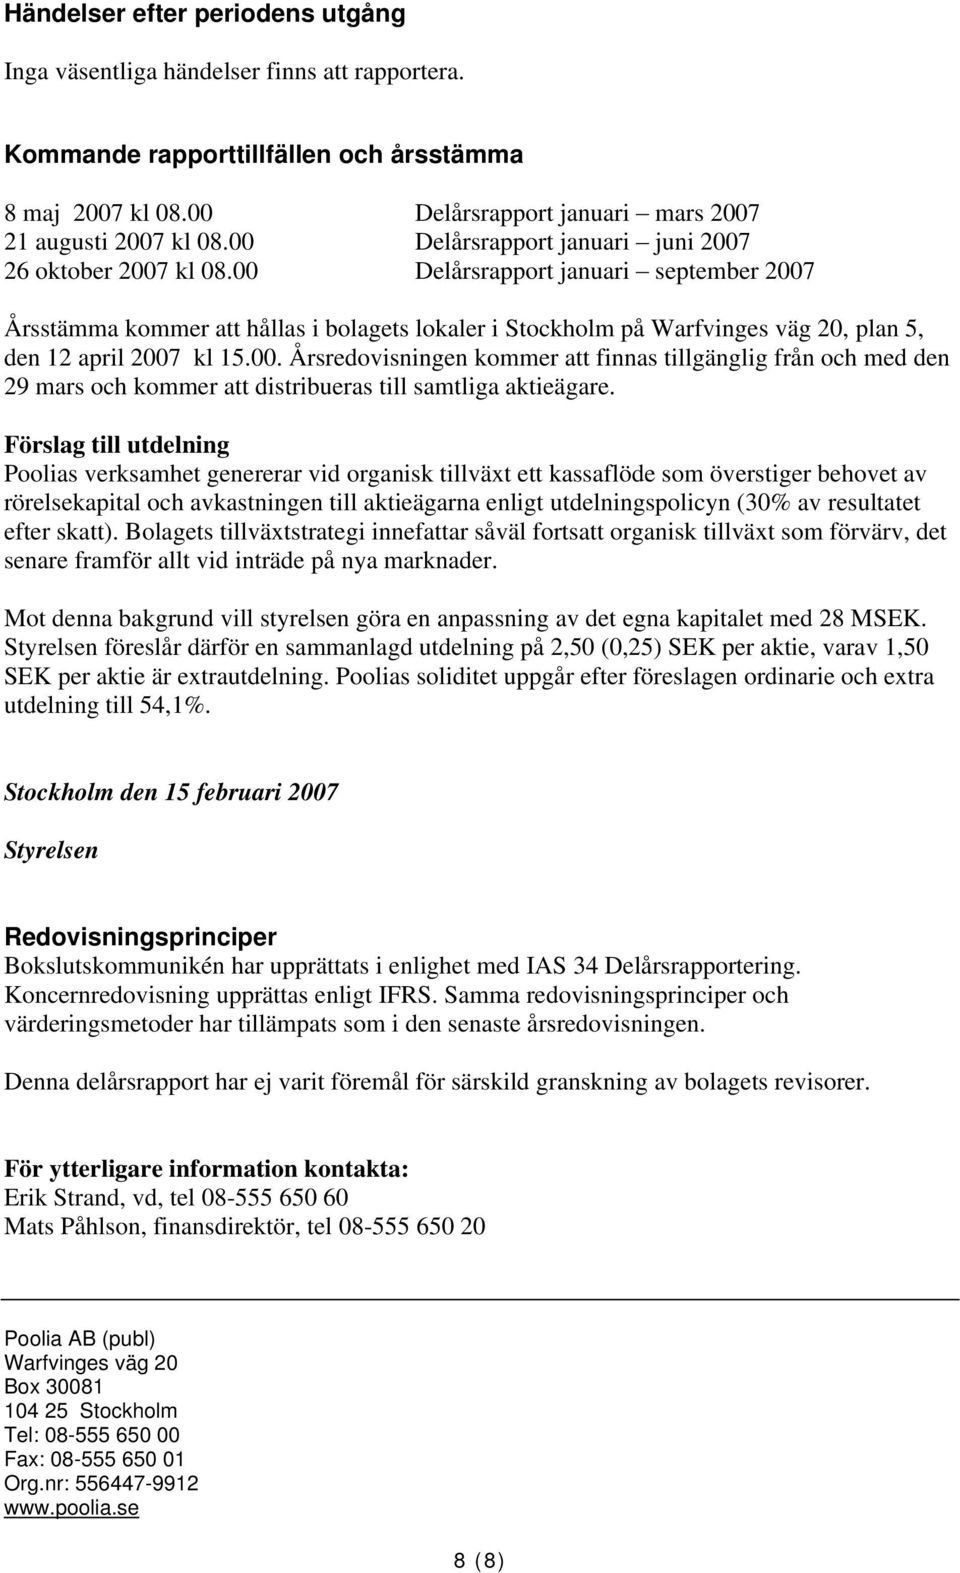 00 Delårsrapport januari september 2007 Årsstämma kommer att hållas i bolagets lokaler i Stockholm på Warfvinges väg 20, plan 5, den 12 april 2007 kl 15.00. Årsredovisningen kommer att finnas tillgänglig från och med den 29 mars och kommer att distribueras till samtliga aktieägare.